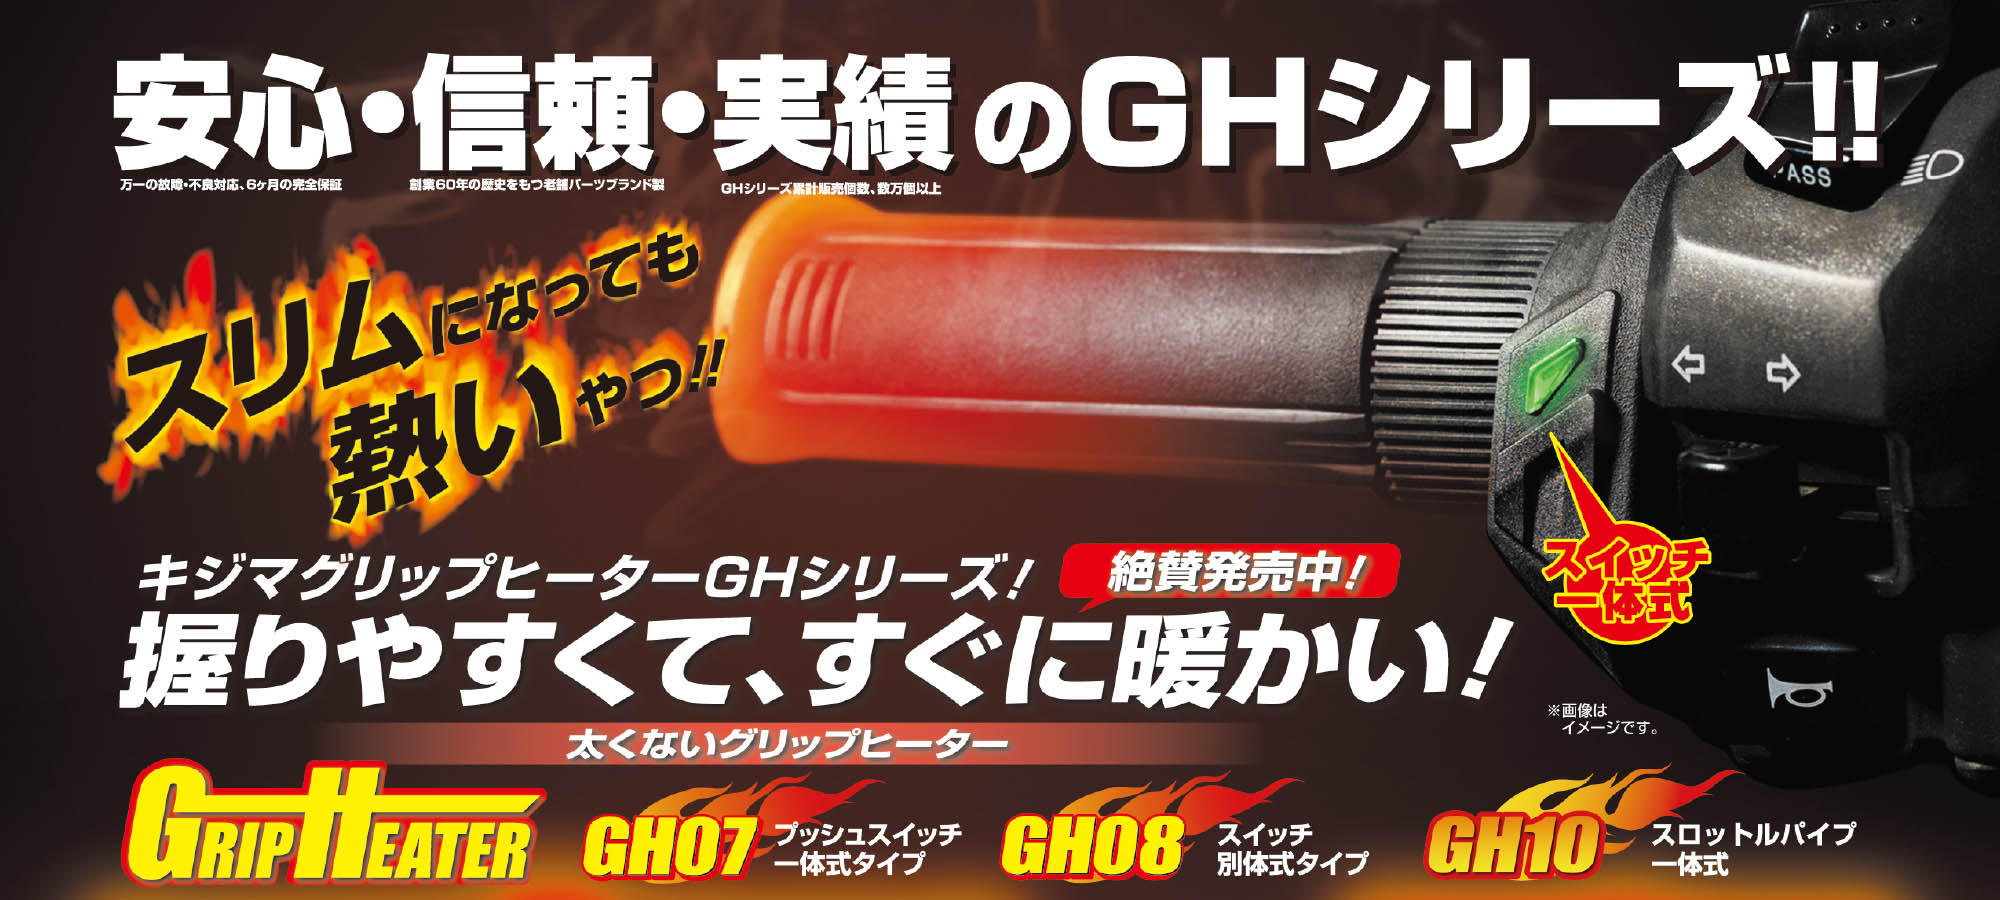 キジマ(Kijima) グリップヒーター GH07 120mm スイッチ一体型